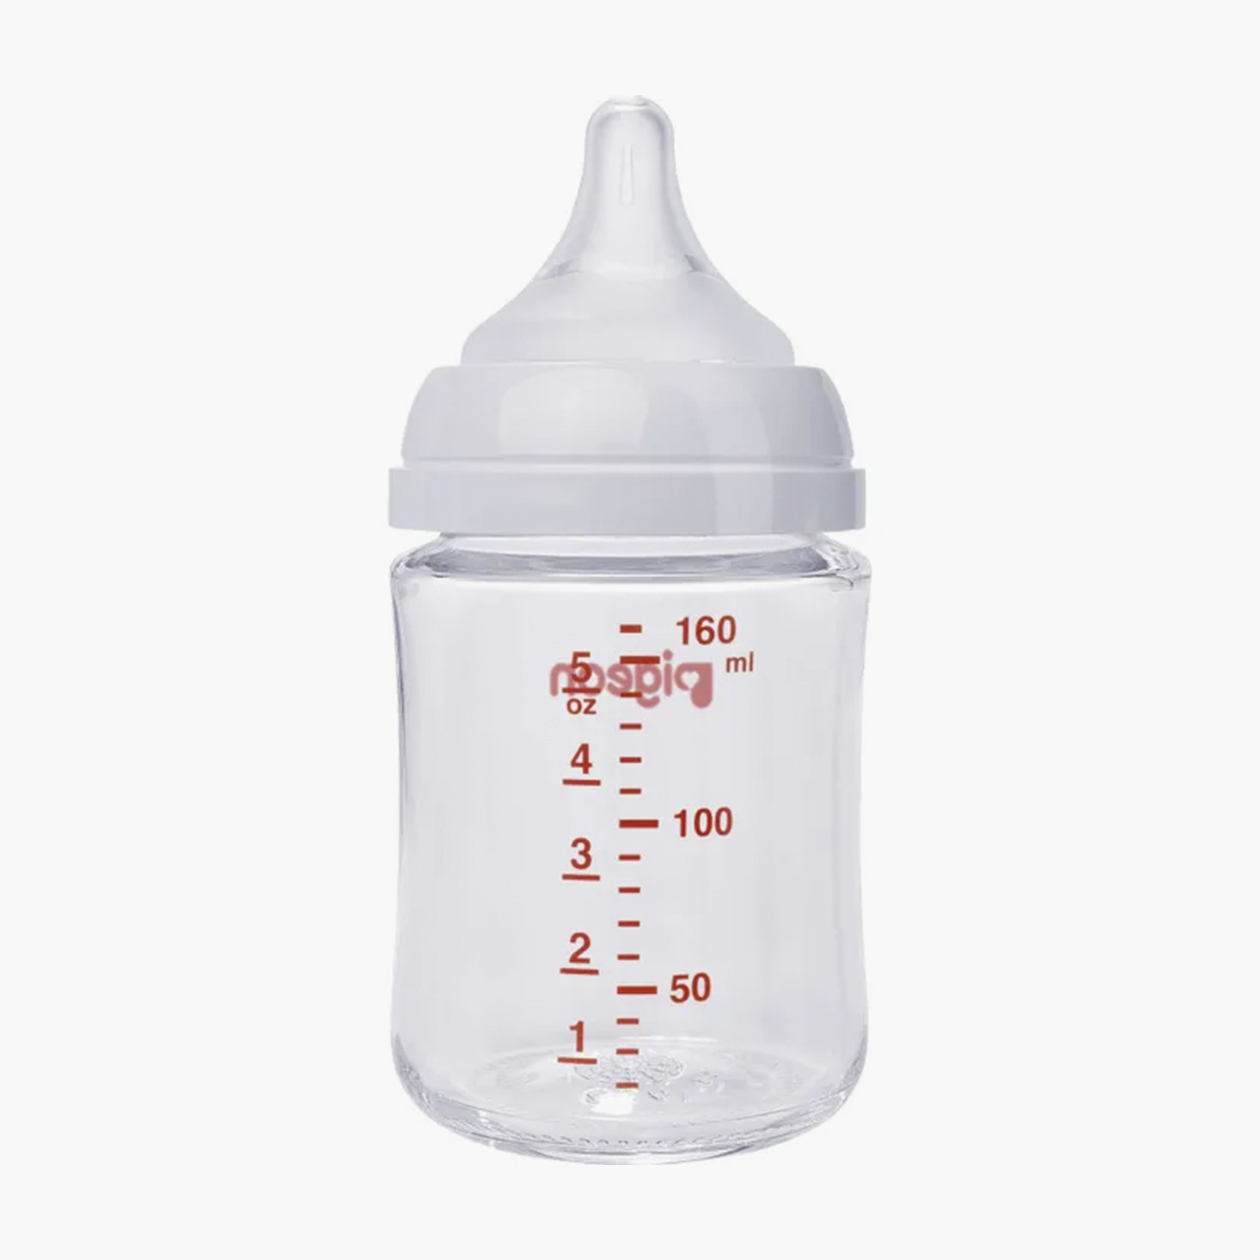 Соска от этой бутылки имитирует грудь матери при правильном ее захвате ребенком во время кормления. Стоимость — около 1700 ₽. Источник: detmir.ru